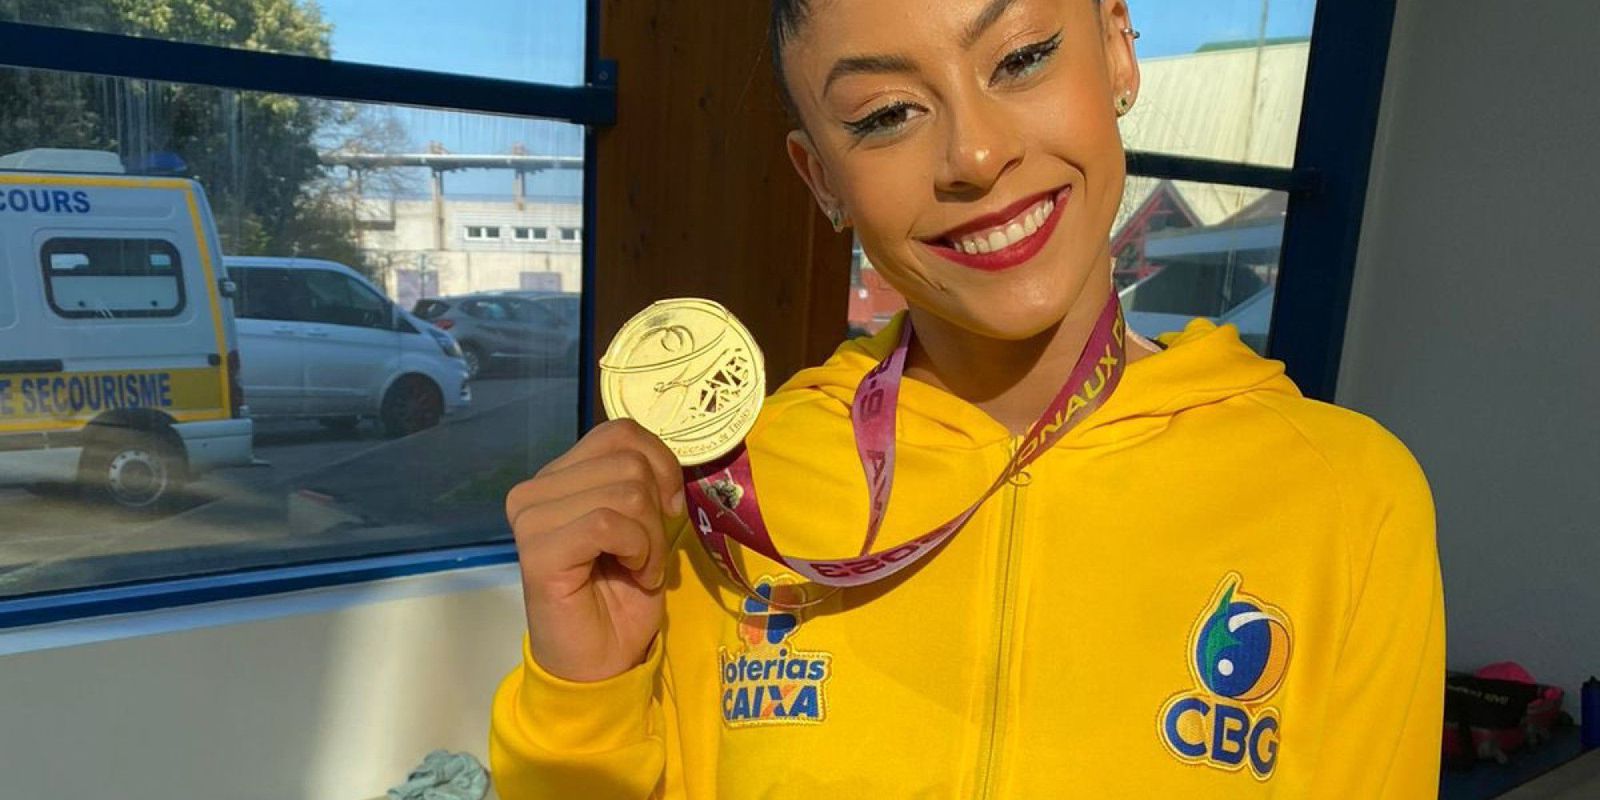 Bárbara Domingos wins unprecedented gold in Rhythmic Gymnastics Grand Prix